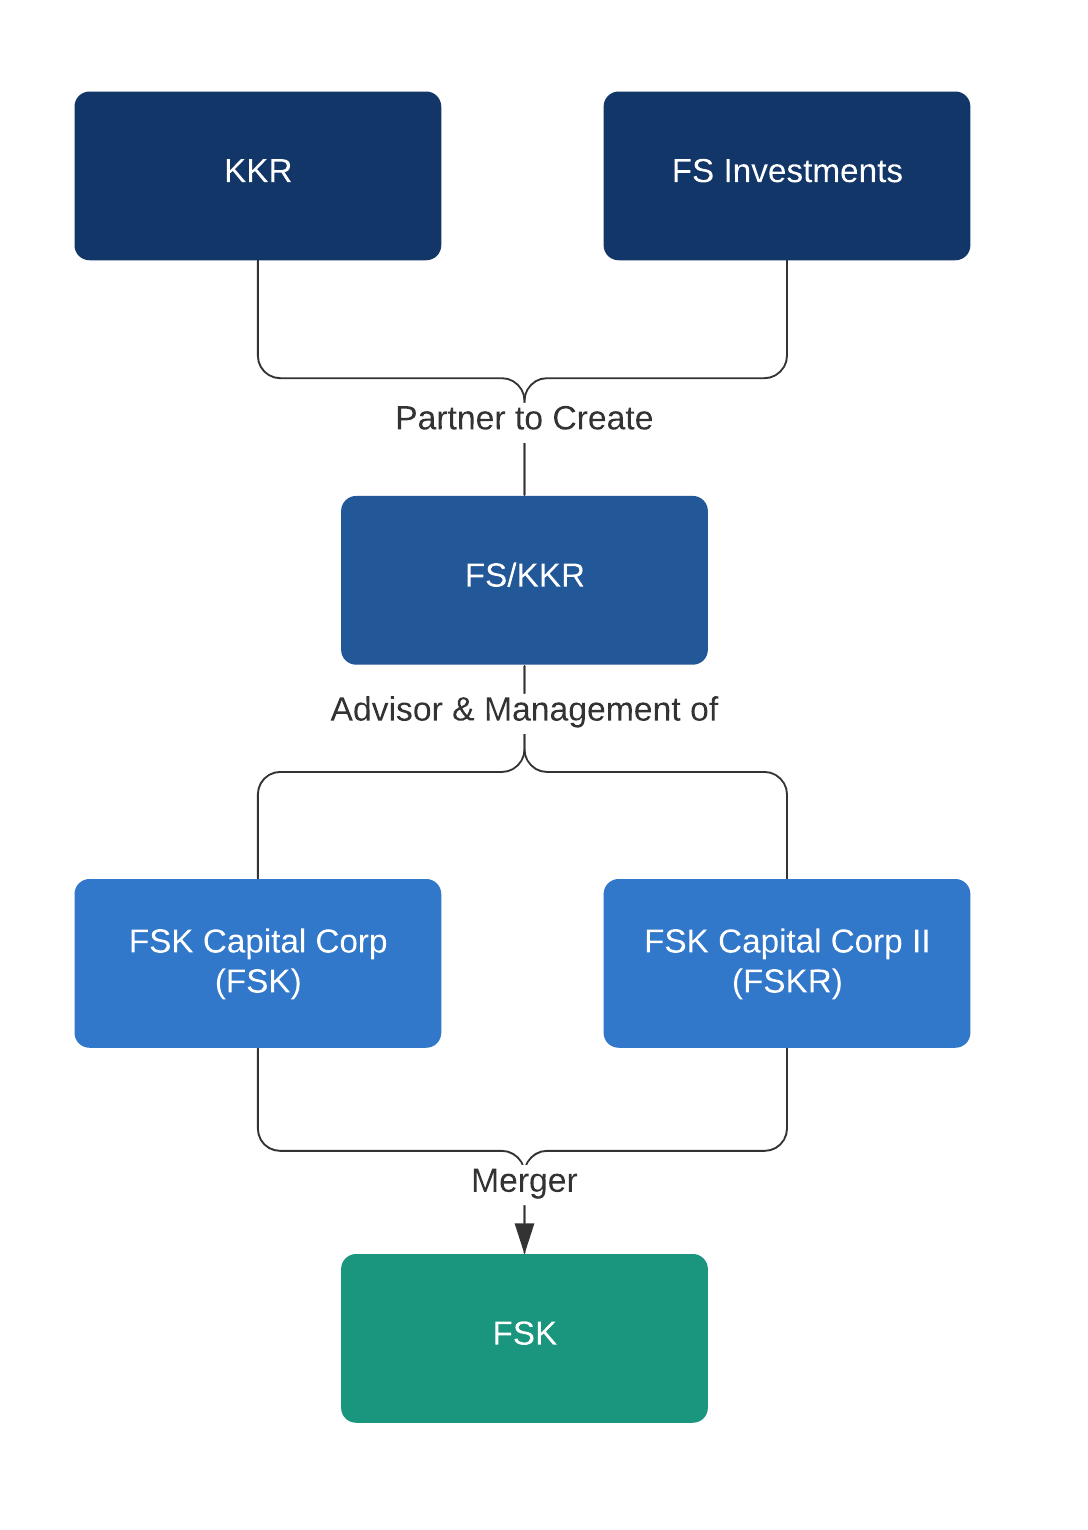 FS/KKR merger